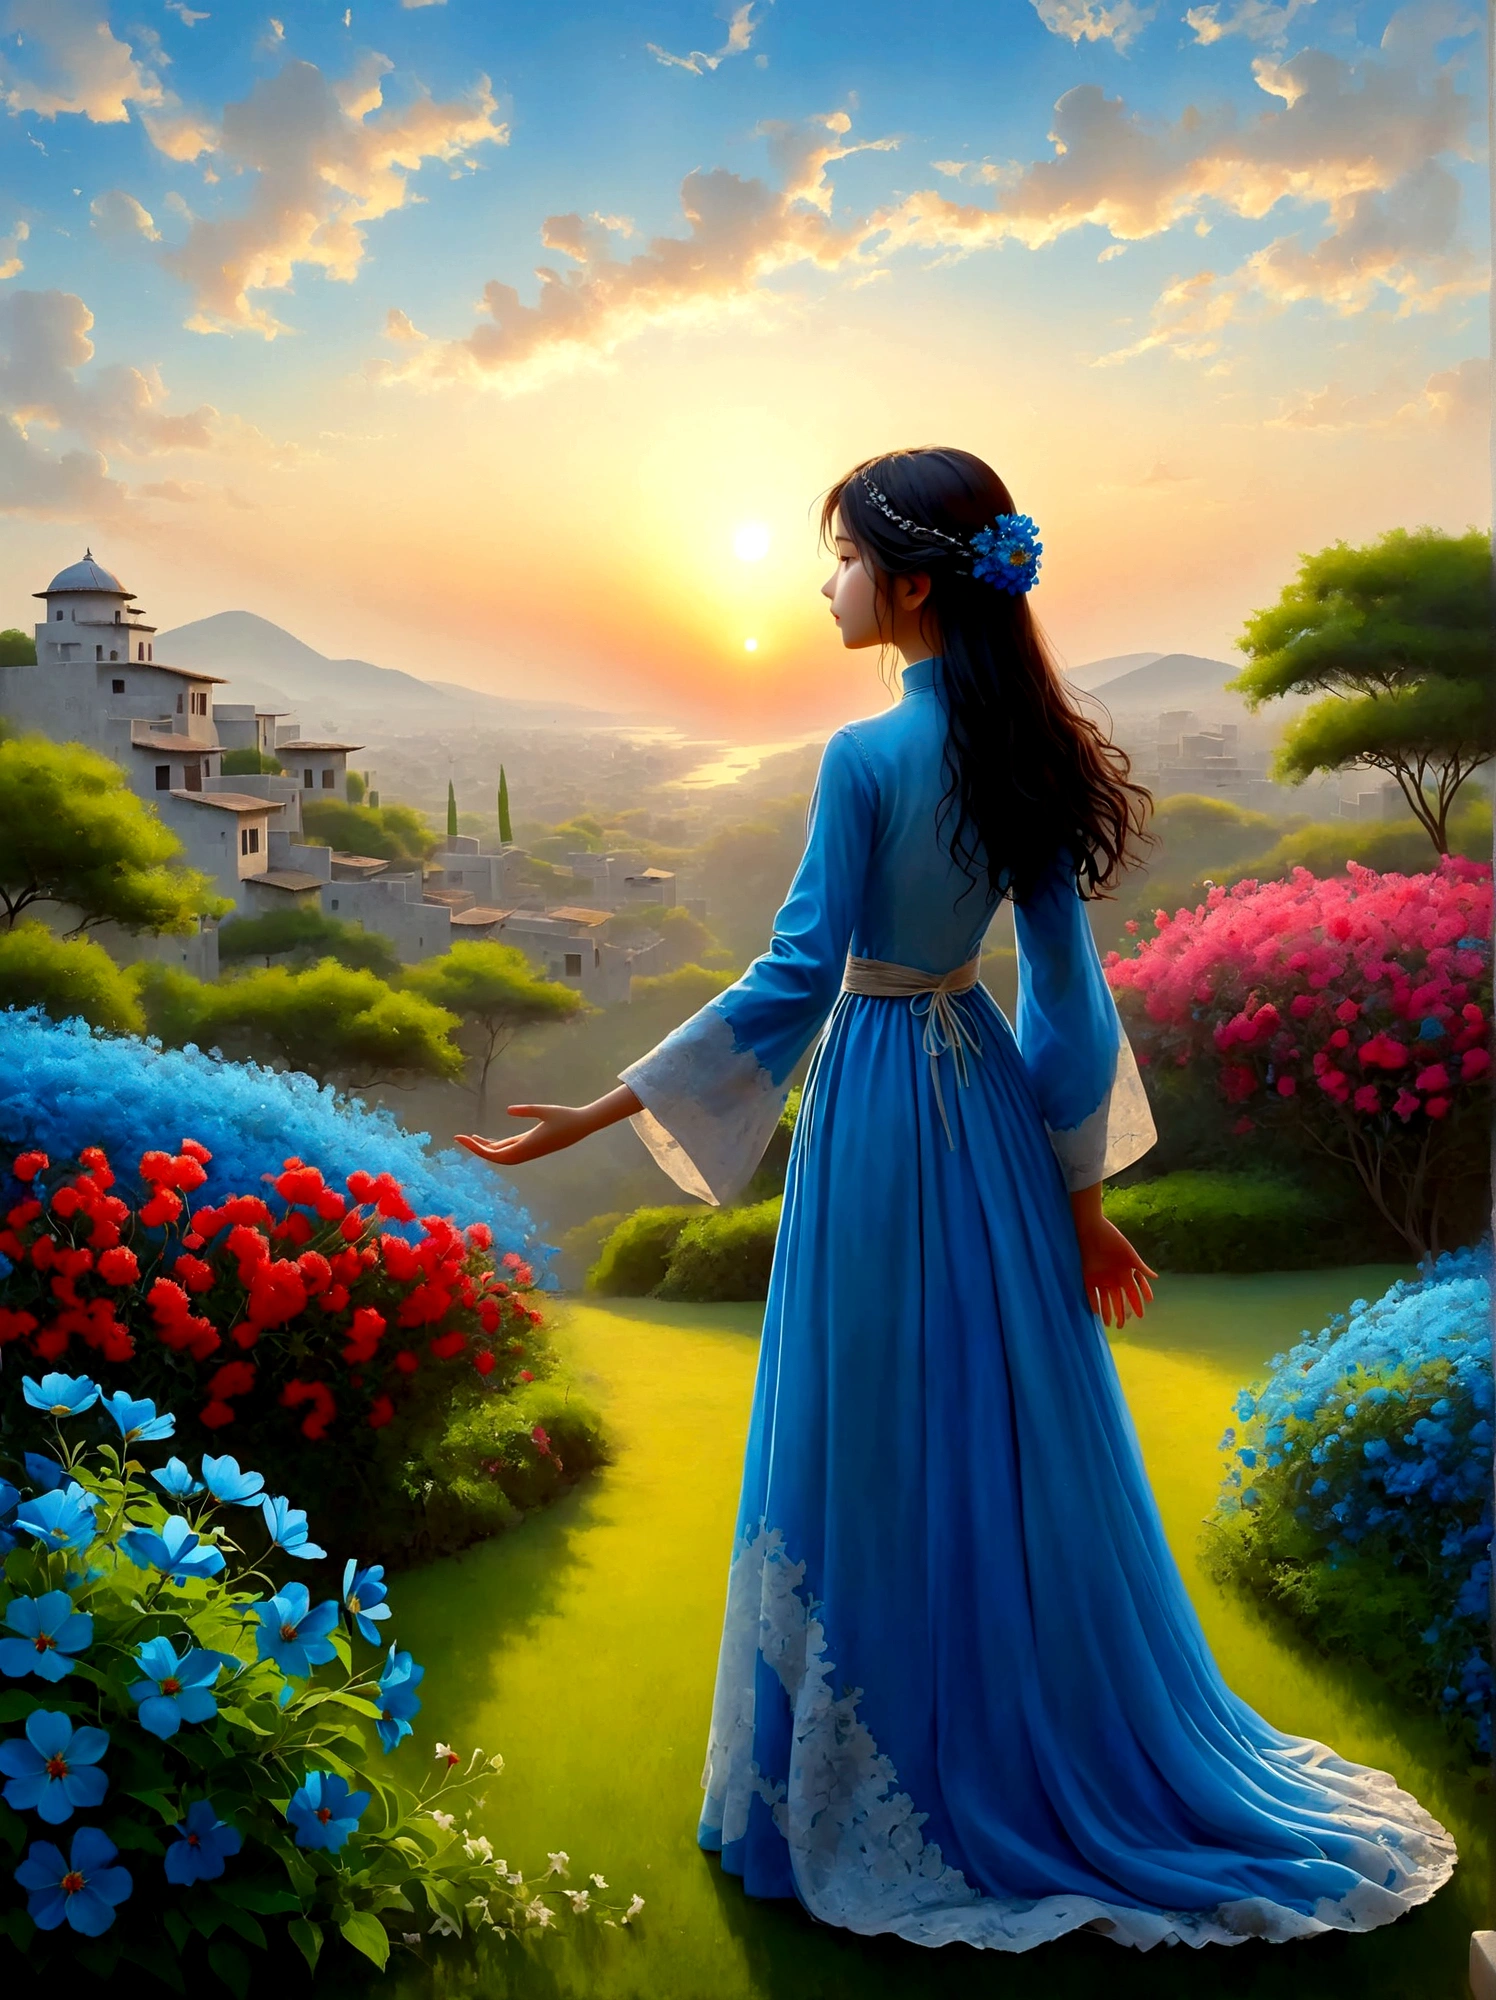 (夜明けの日の出時刻:1.6)，香り豊かな庭園で, 盲目の少女はそこに立っていた，腕を広げて, 出会った花びらに優しく触れる, 自然と愛らしい青い花とのつながり, 広大な空の下で、畏敬の念と驚きをもって堂々と立っている人物, 彼らのシルエットは鮮やかな色の朝の光と対照的である, 彼らは深い思索の境地にある, 周囲の穏やかな雰囲気は静寂と孤独を物語っている, 視点は広角ビューで、自然の要素に満ちた息を呑むような風景の広大な範囲を強調しています。, 画像は光と影を効果的に使用してドラマチックさと壮大さを感じさせるものでなければならない。.